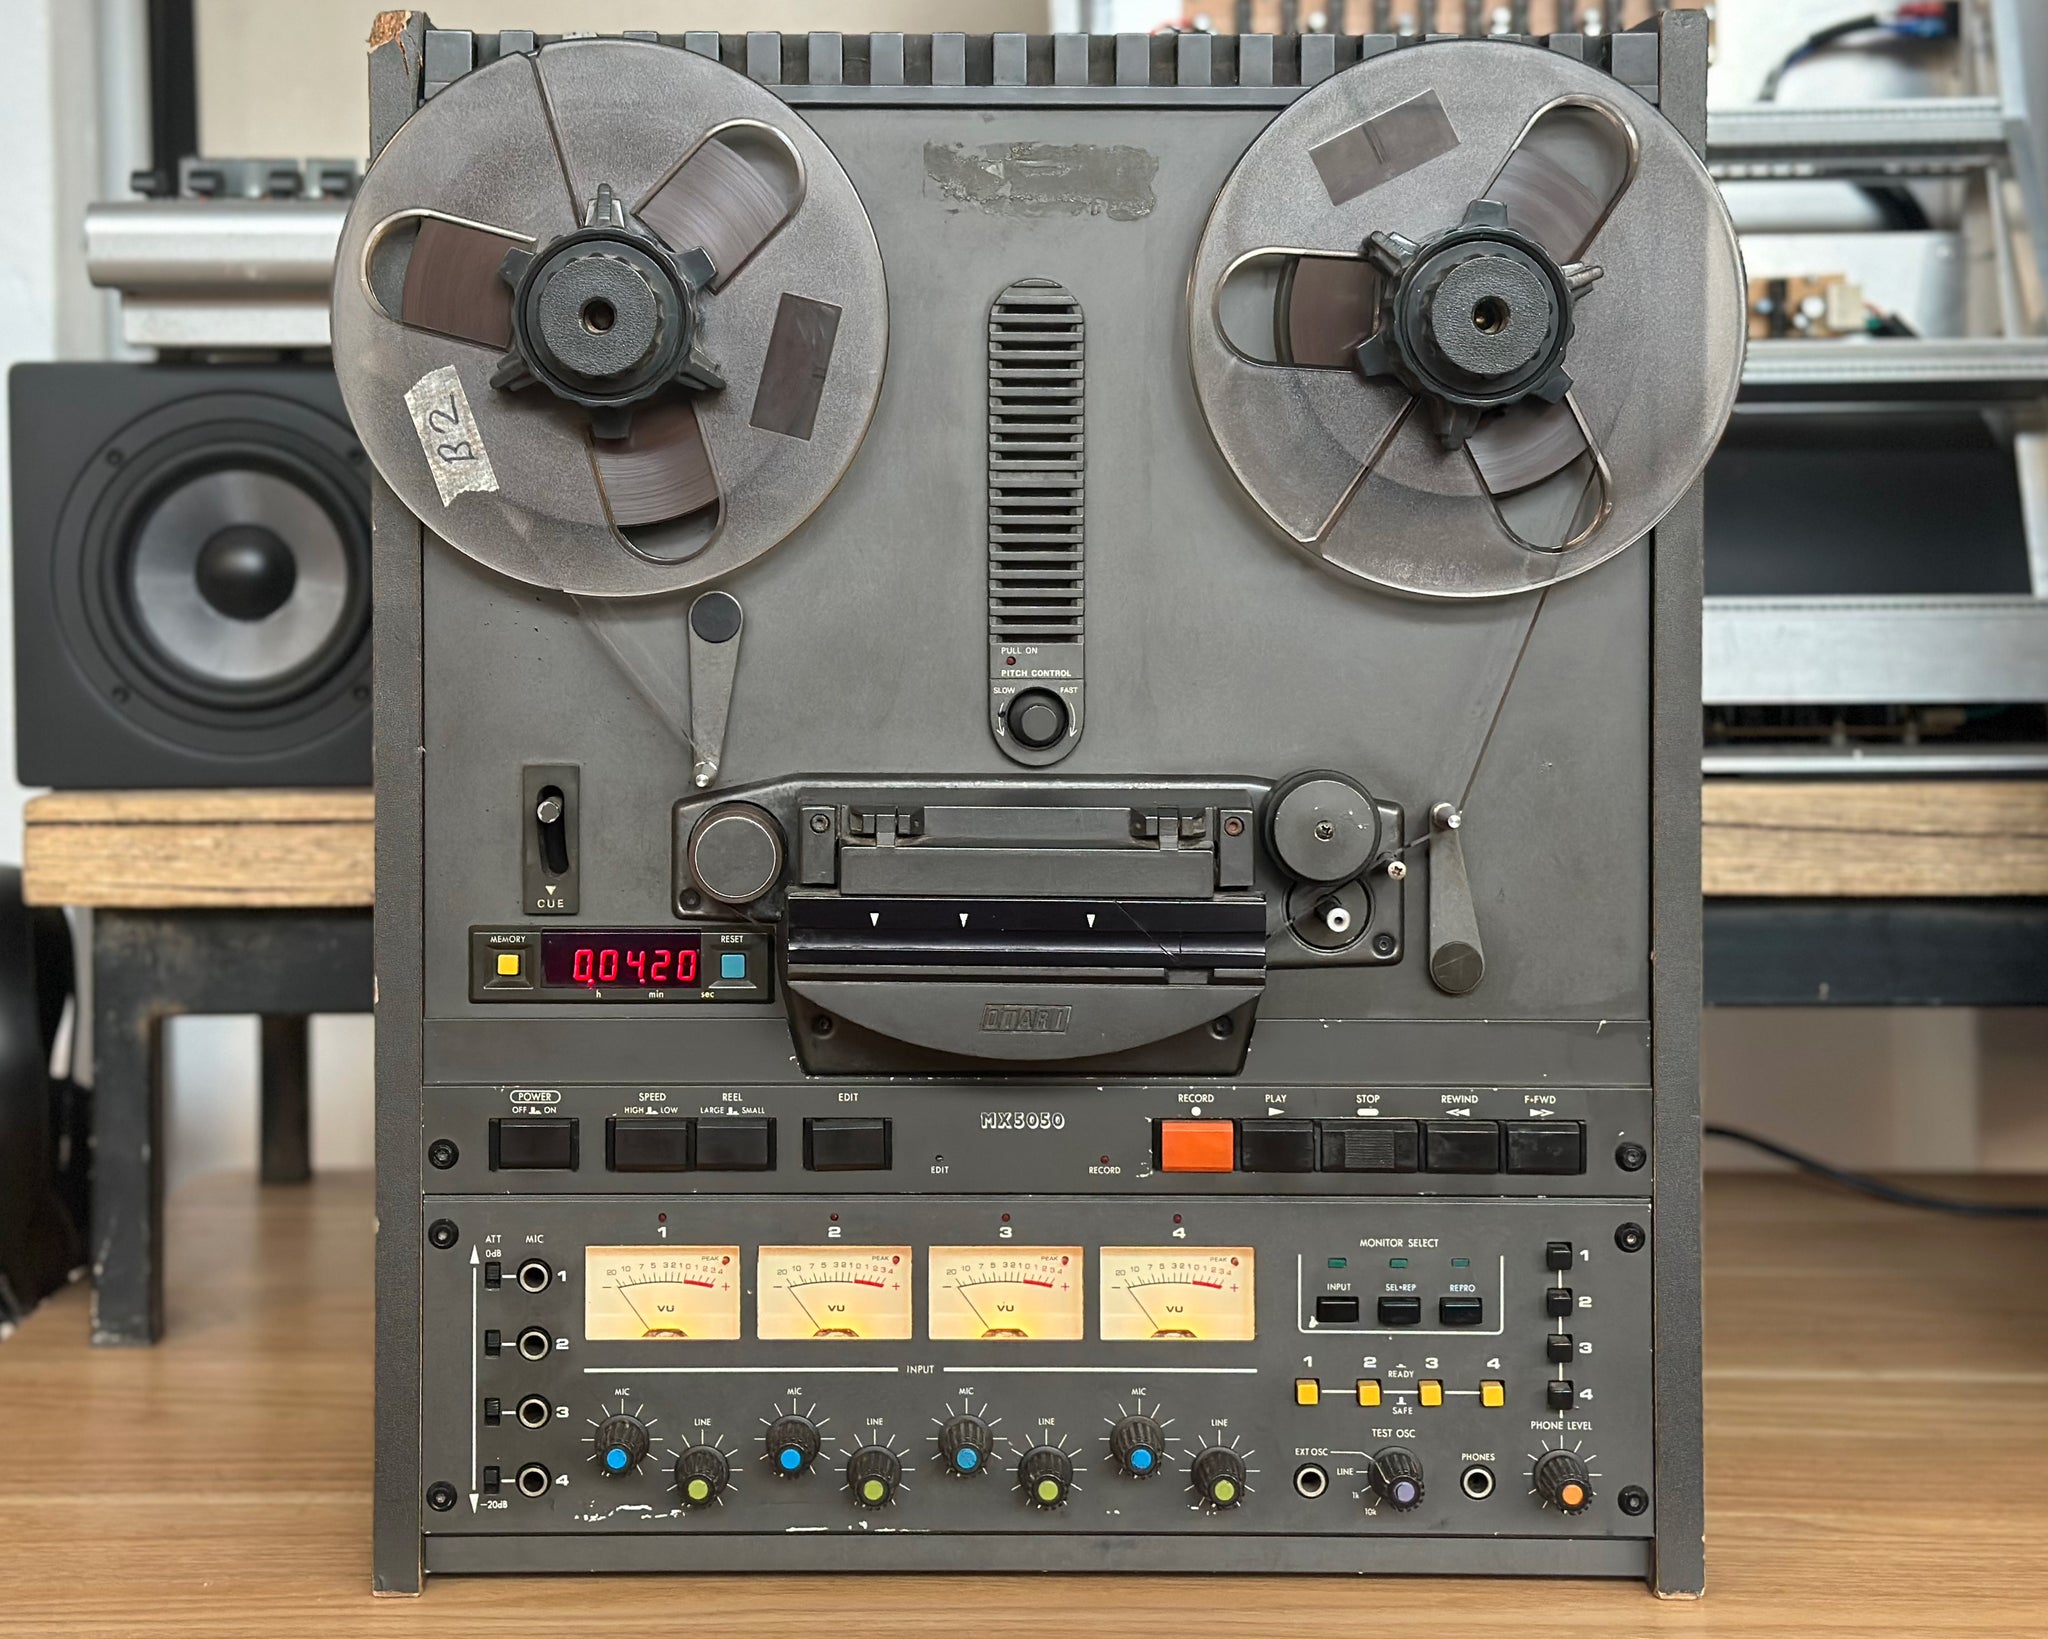 Otari MX5050 BQ-2 4 track recorder 1/4 Tape Reel to Reel – Found